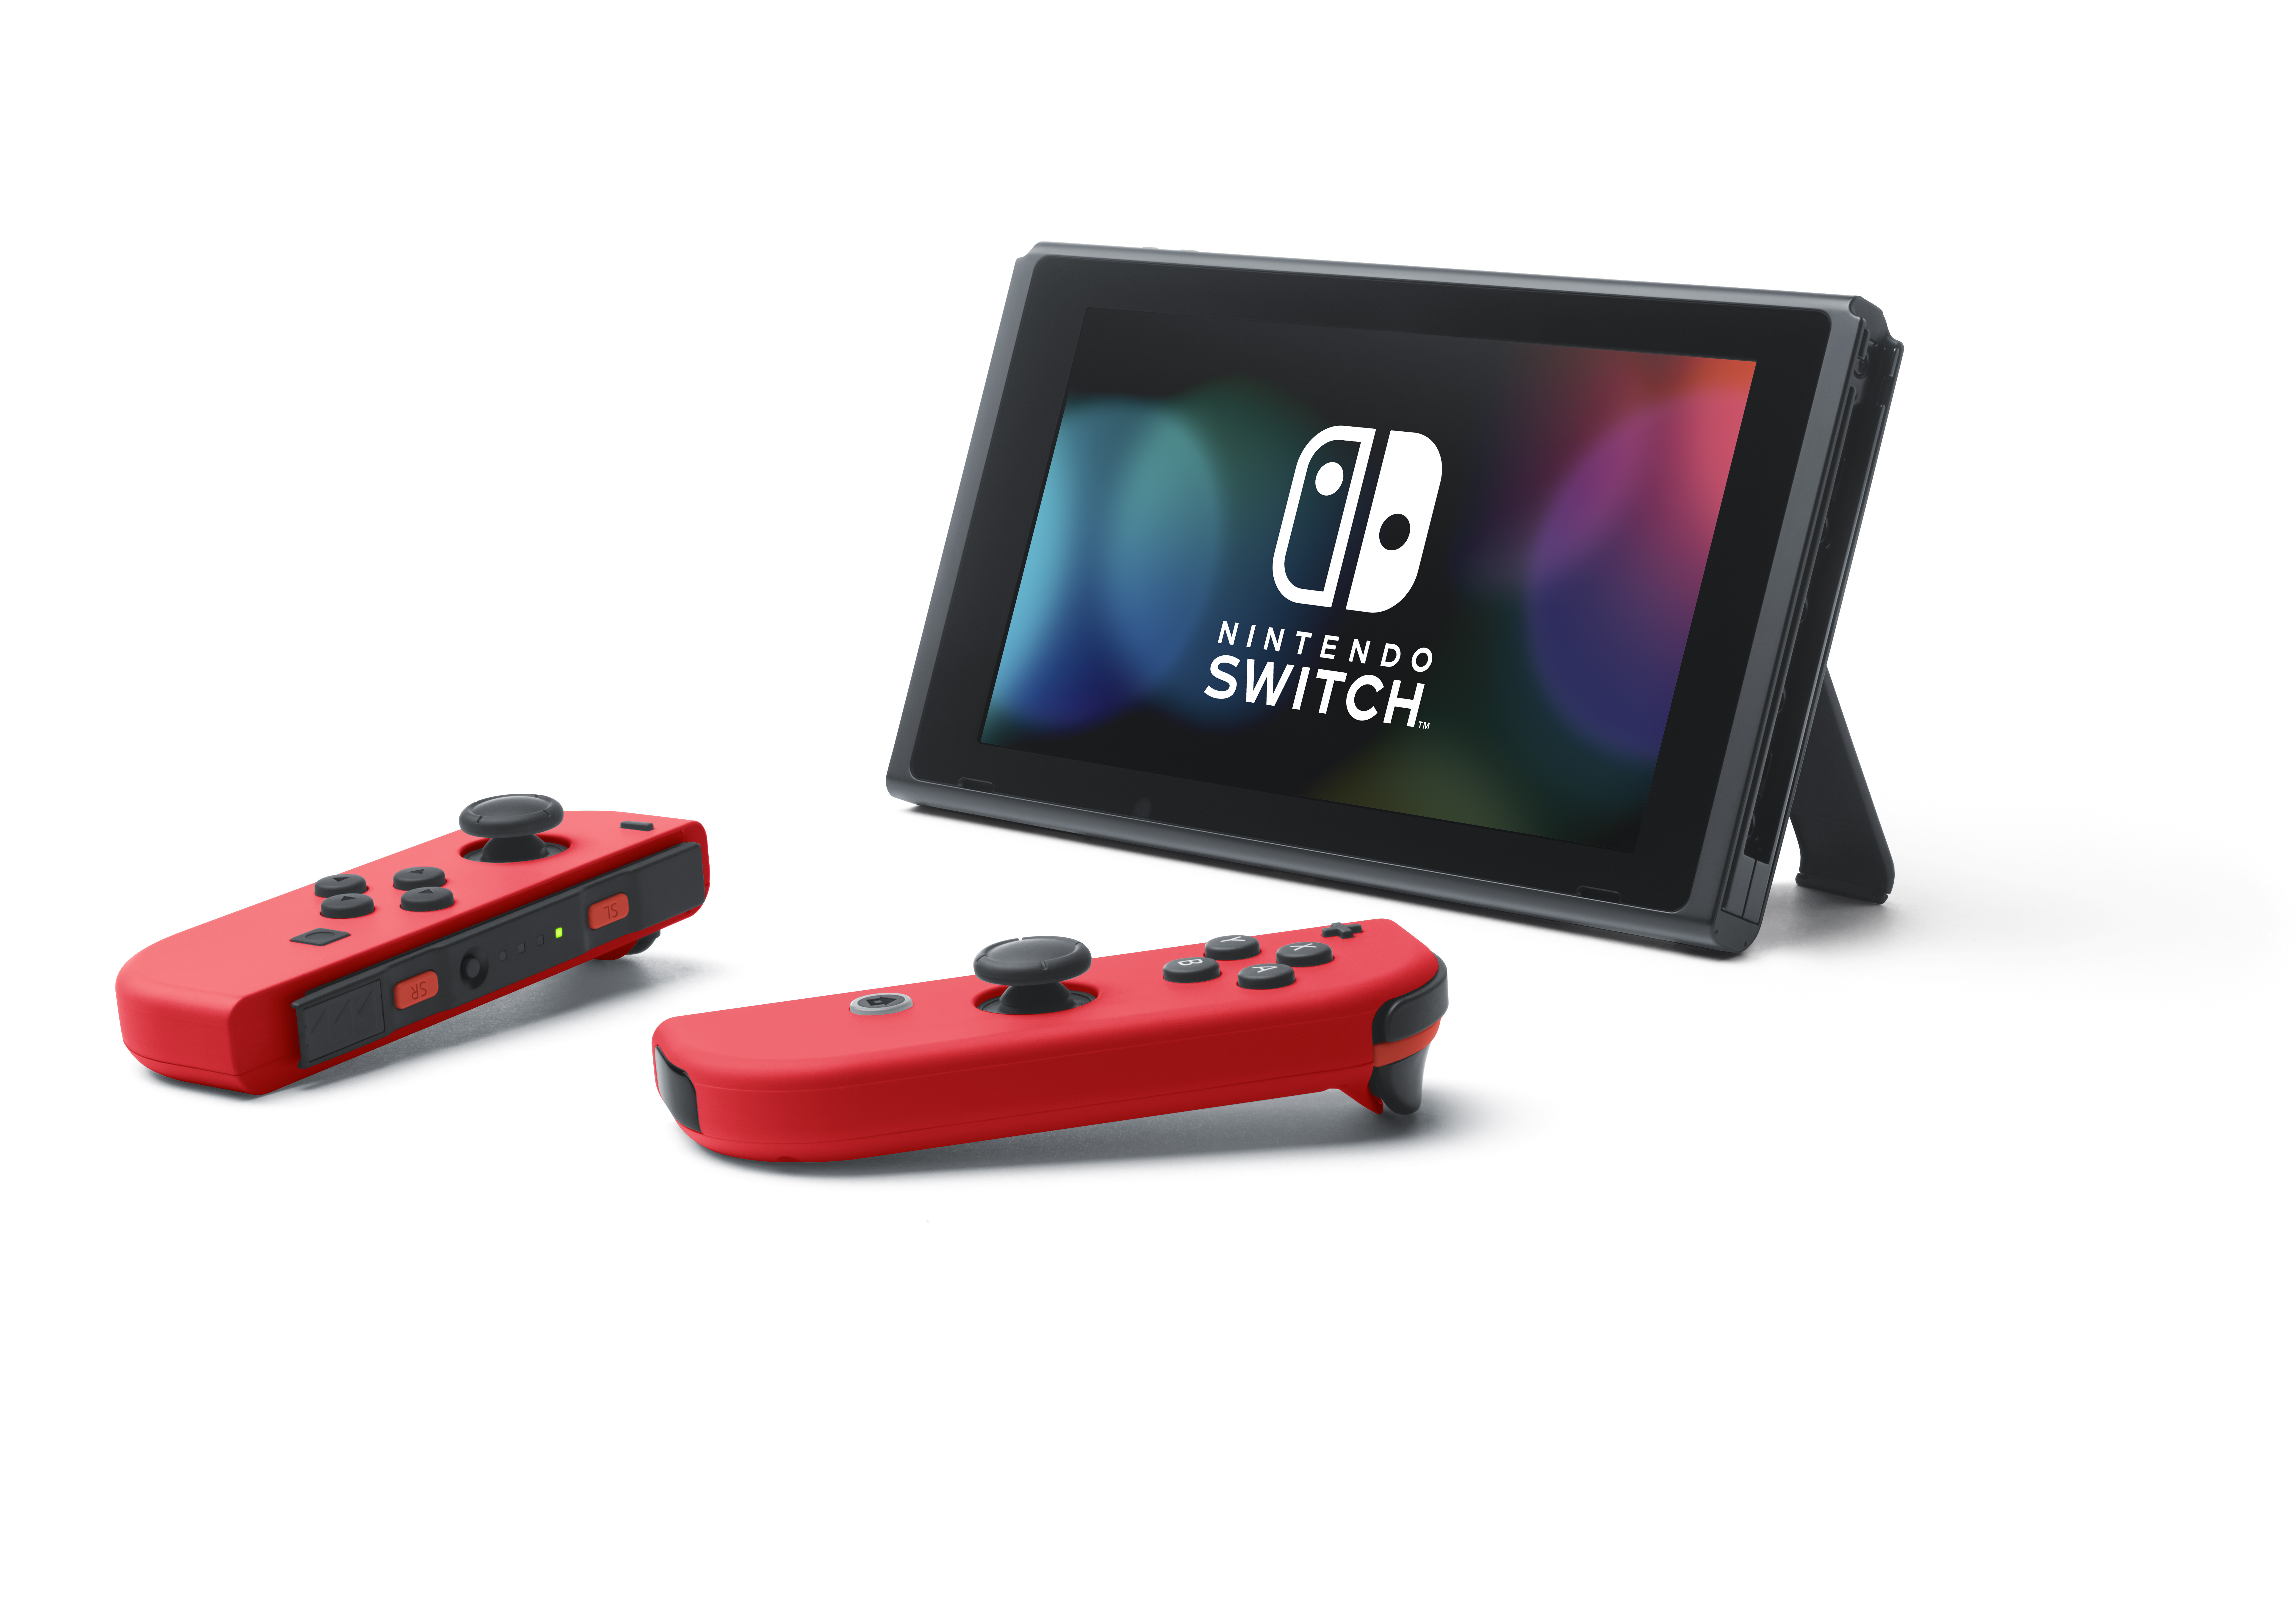 Nintendo Switch Bundle with Mario Red Joy-Con, $20 Nintendo eShop Credit, & Carrying Case - image 3 of 9